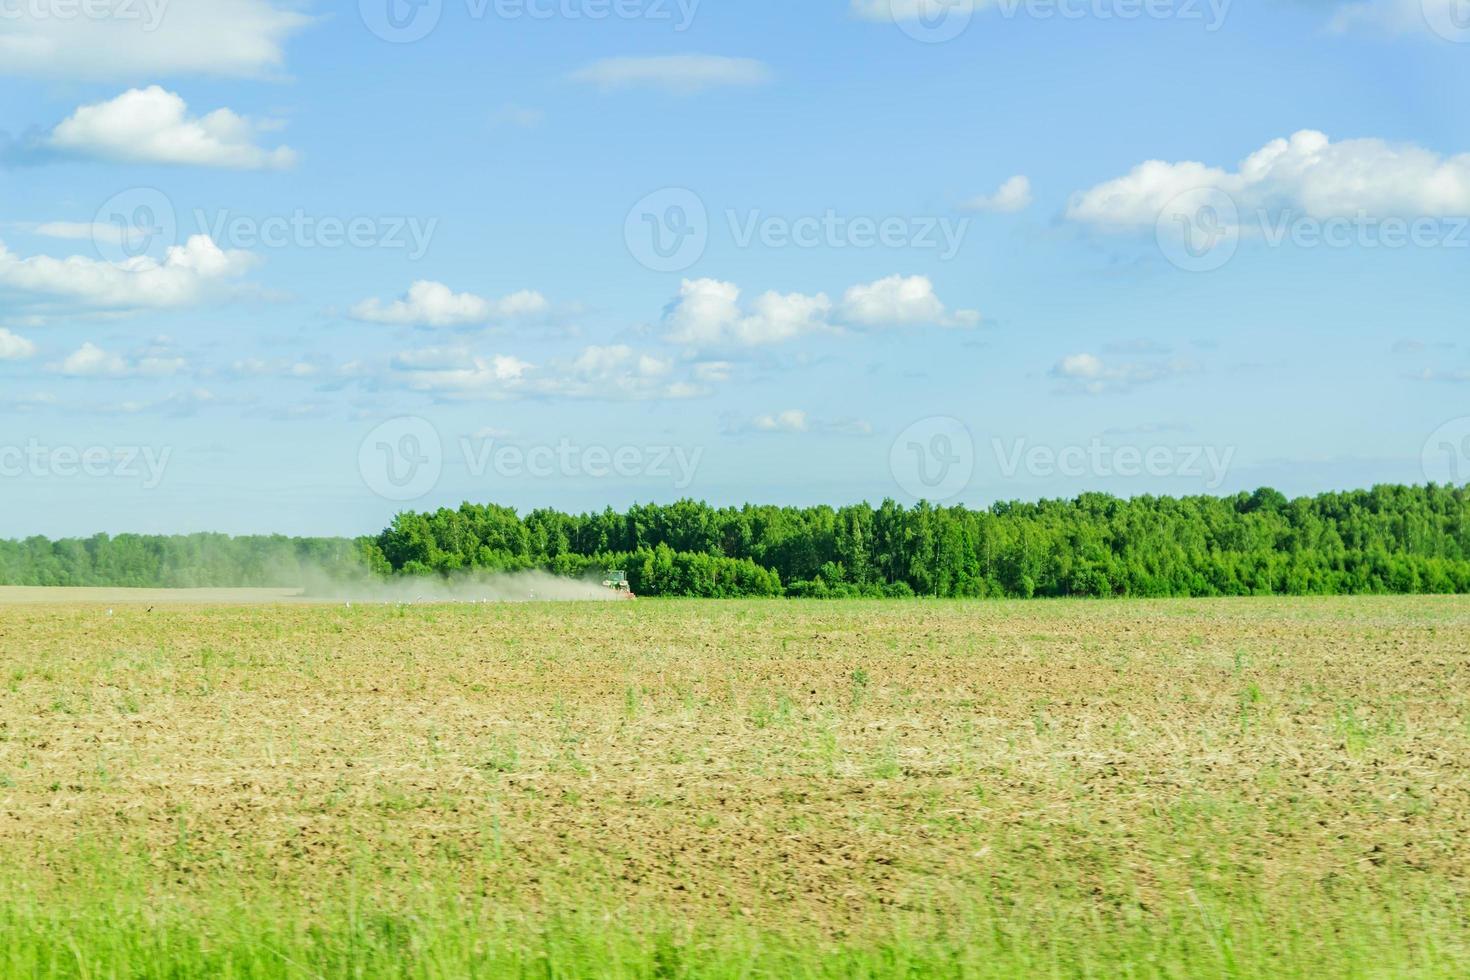 landsbygden i solig sommardag. jordbruksarbeten på fältet foto